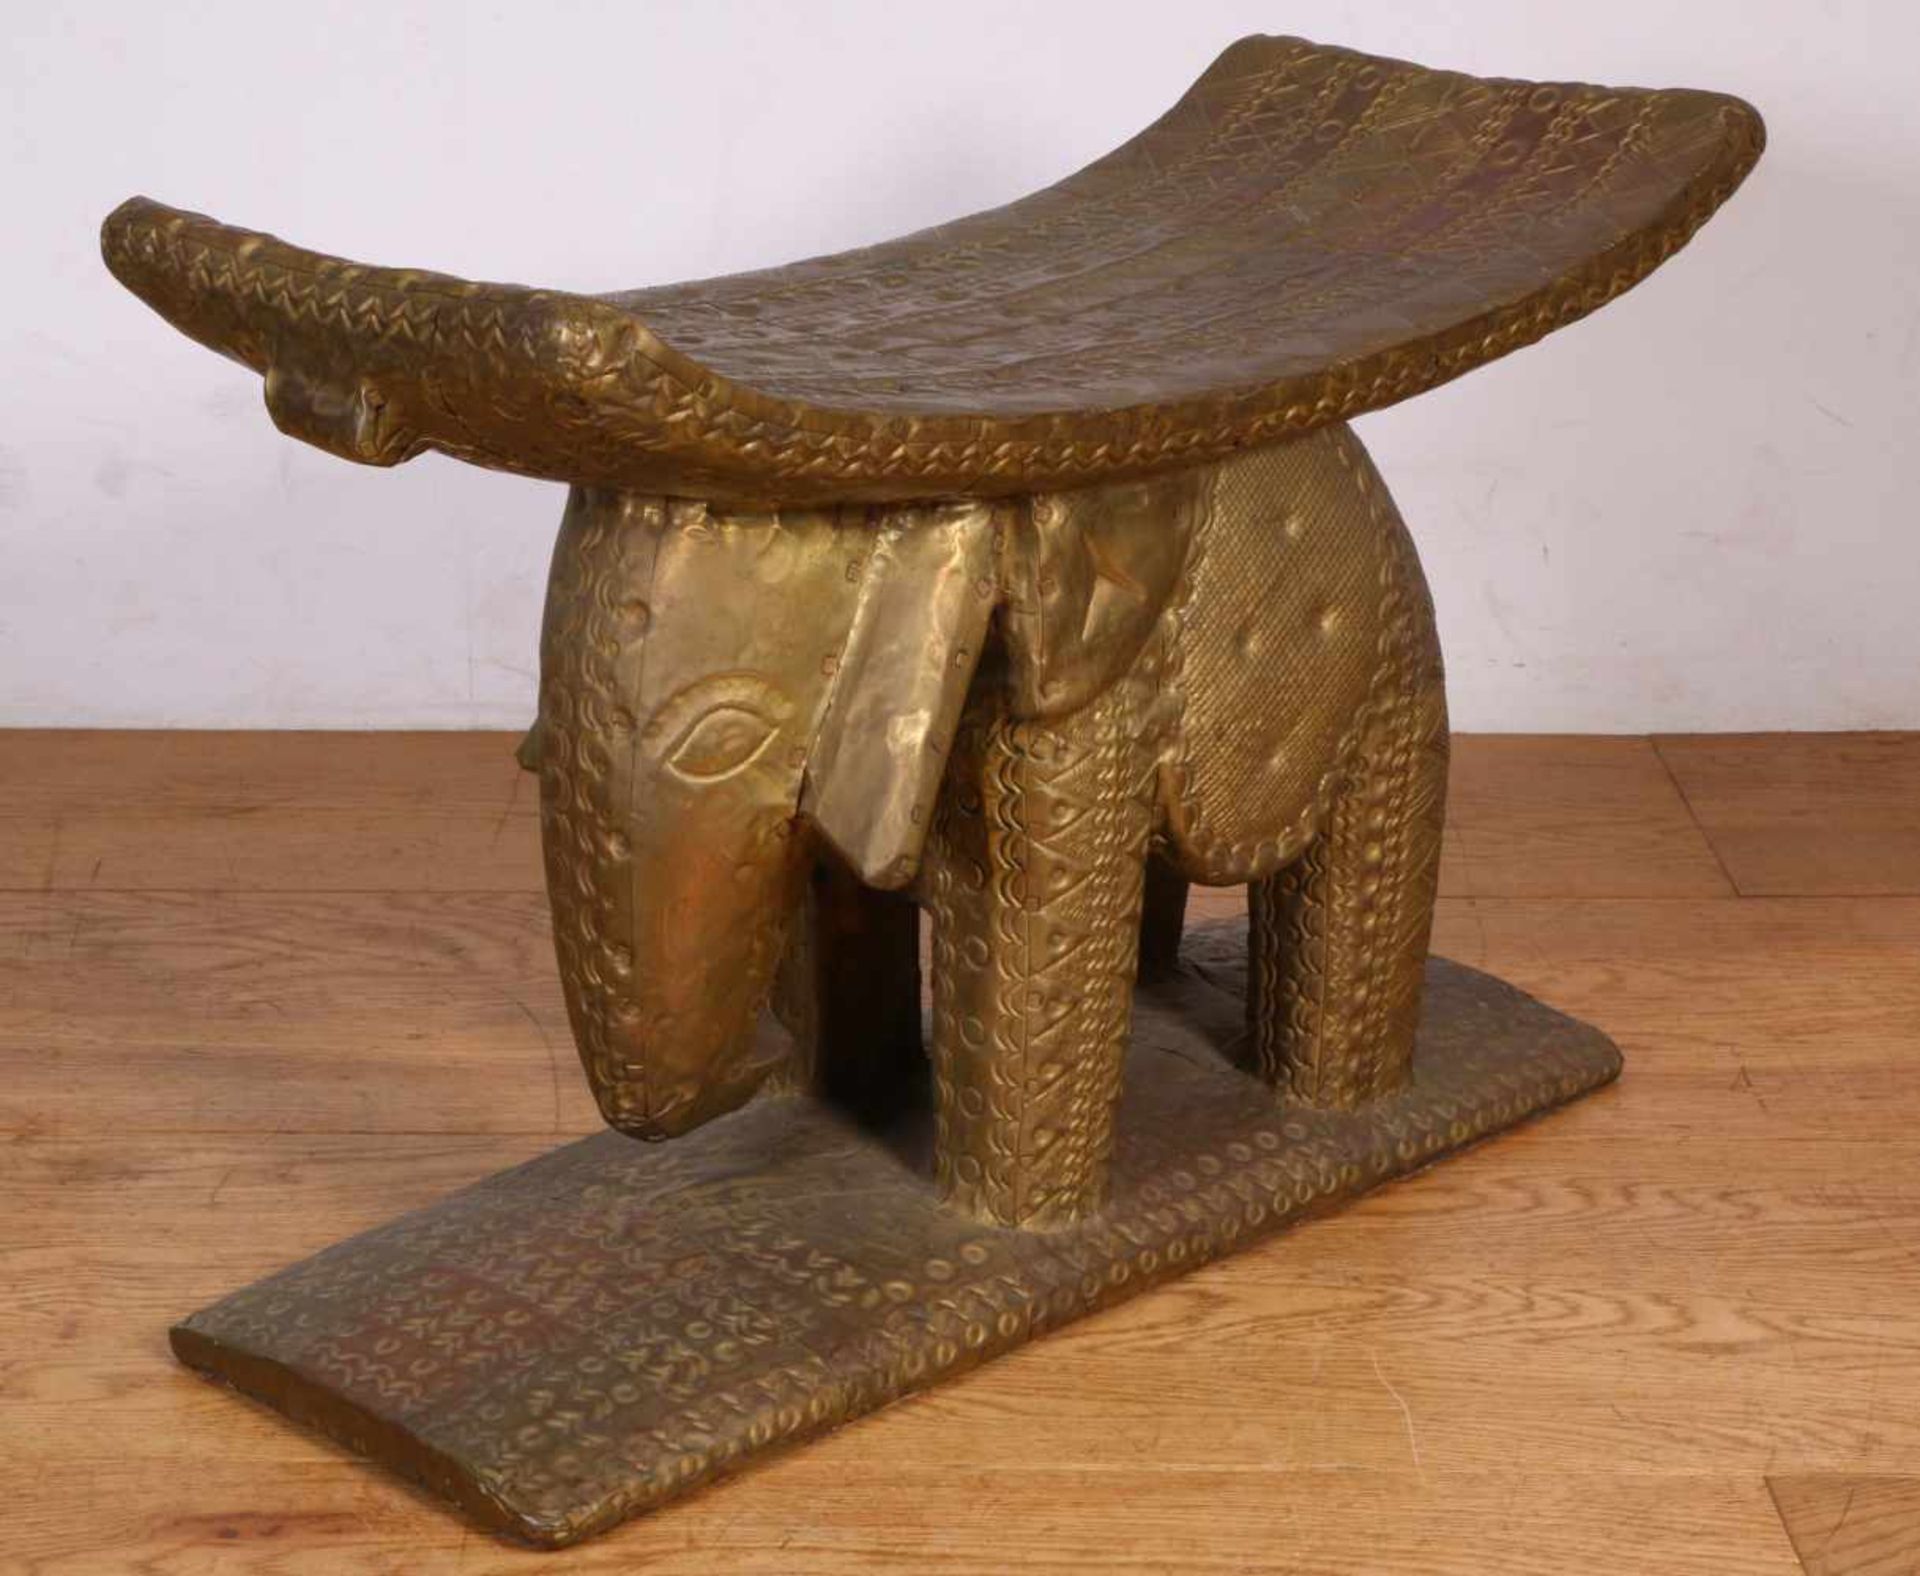 Ghana, Ashanti, houten kruk (stool)in de vorm van een staande olifant, met koperplaat bekleed en - Bild 2 aus 2